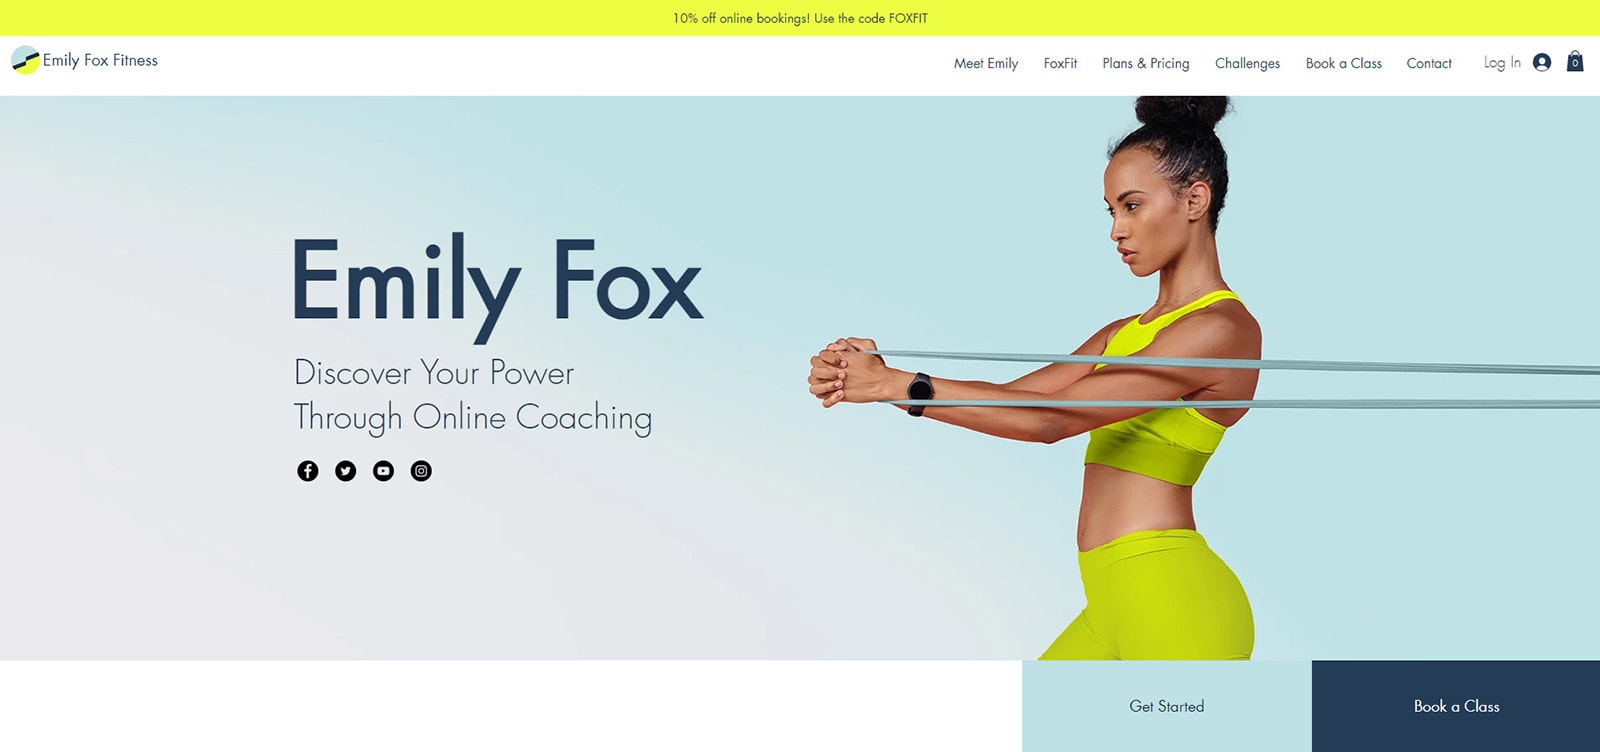 Fotografia de Emily Fox Fitness, um modelo Wix flexível para preparadores físicos individuais.